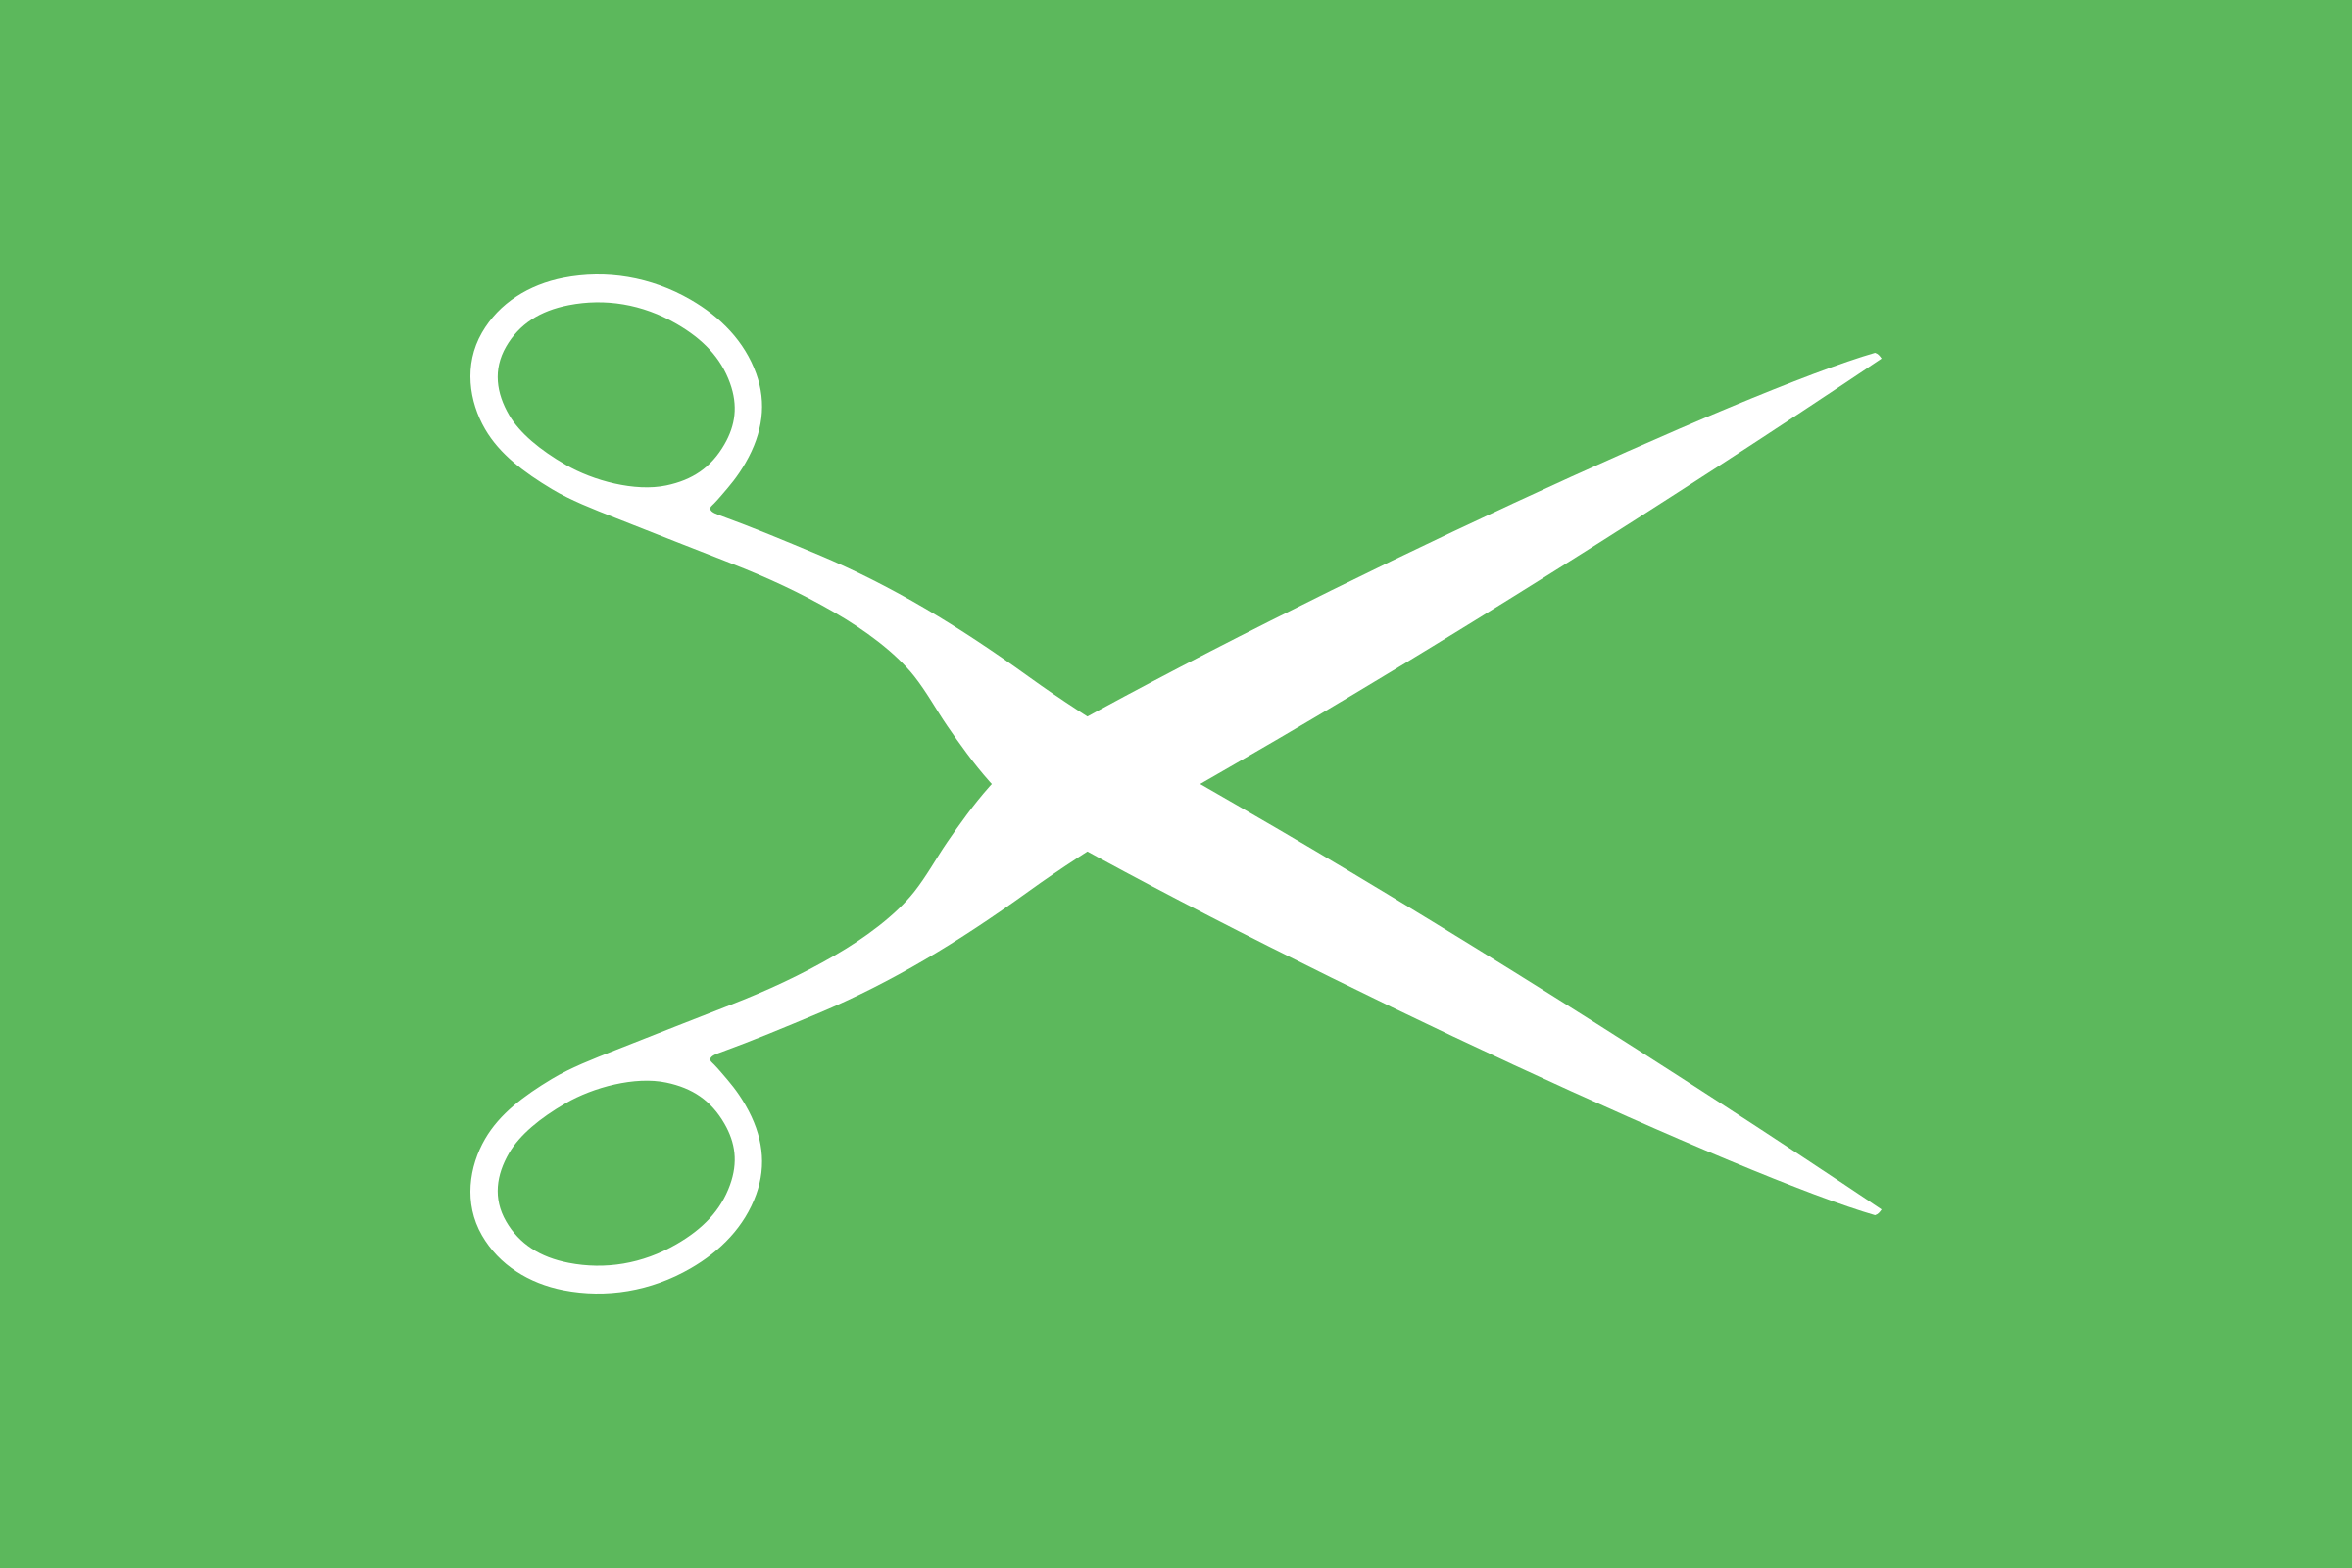 Clipart - scissors flag